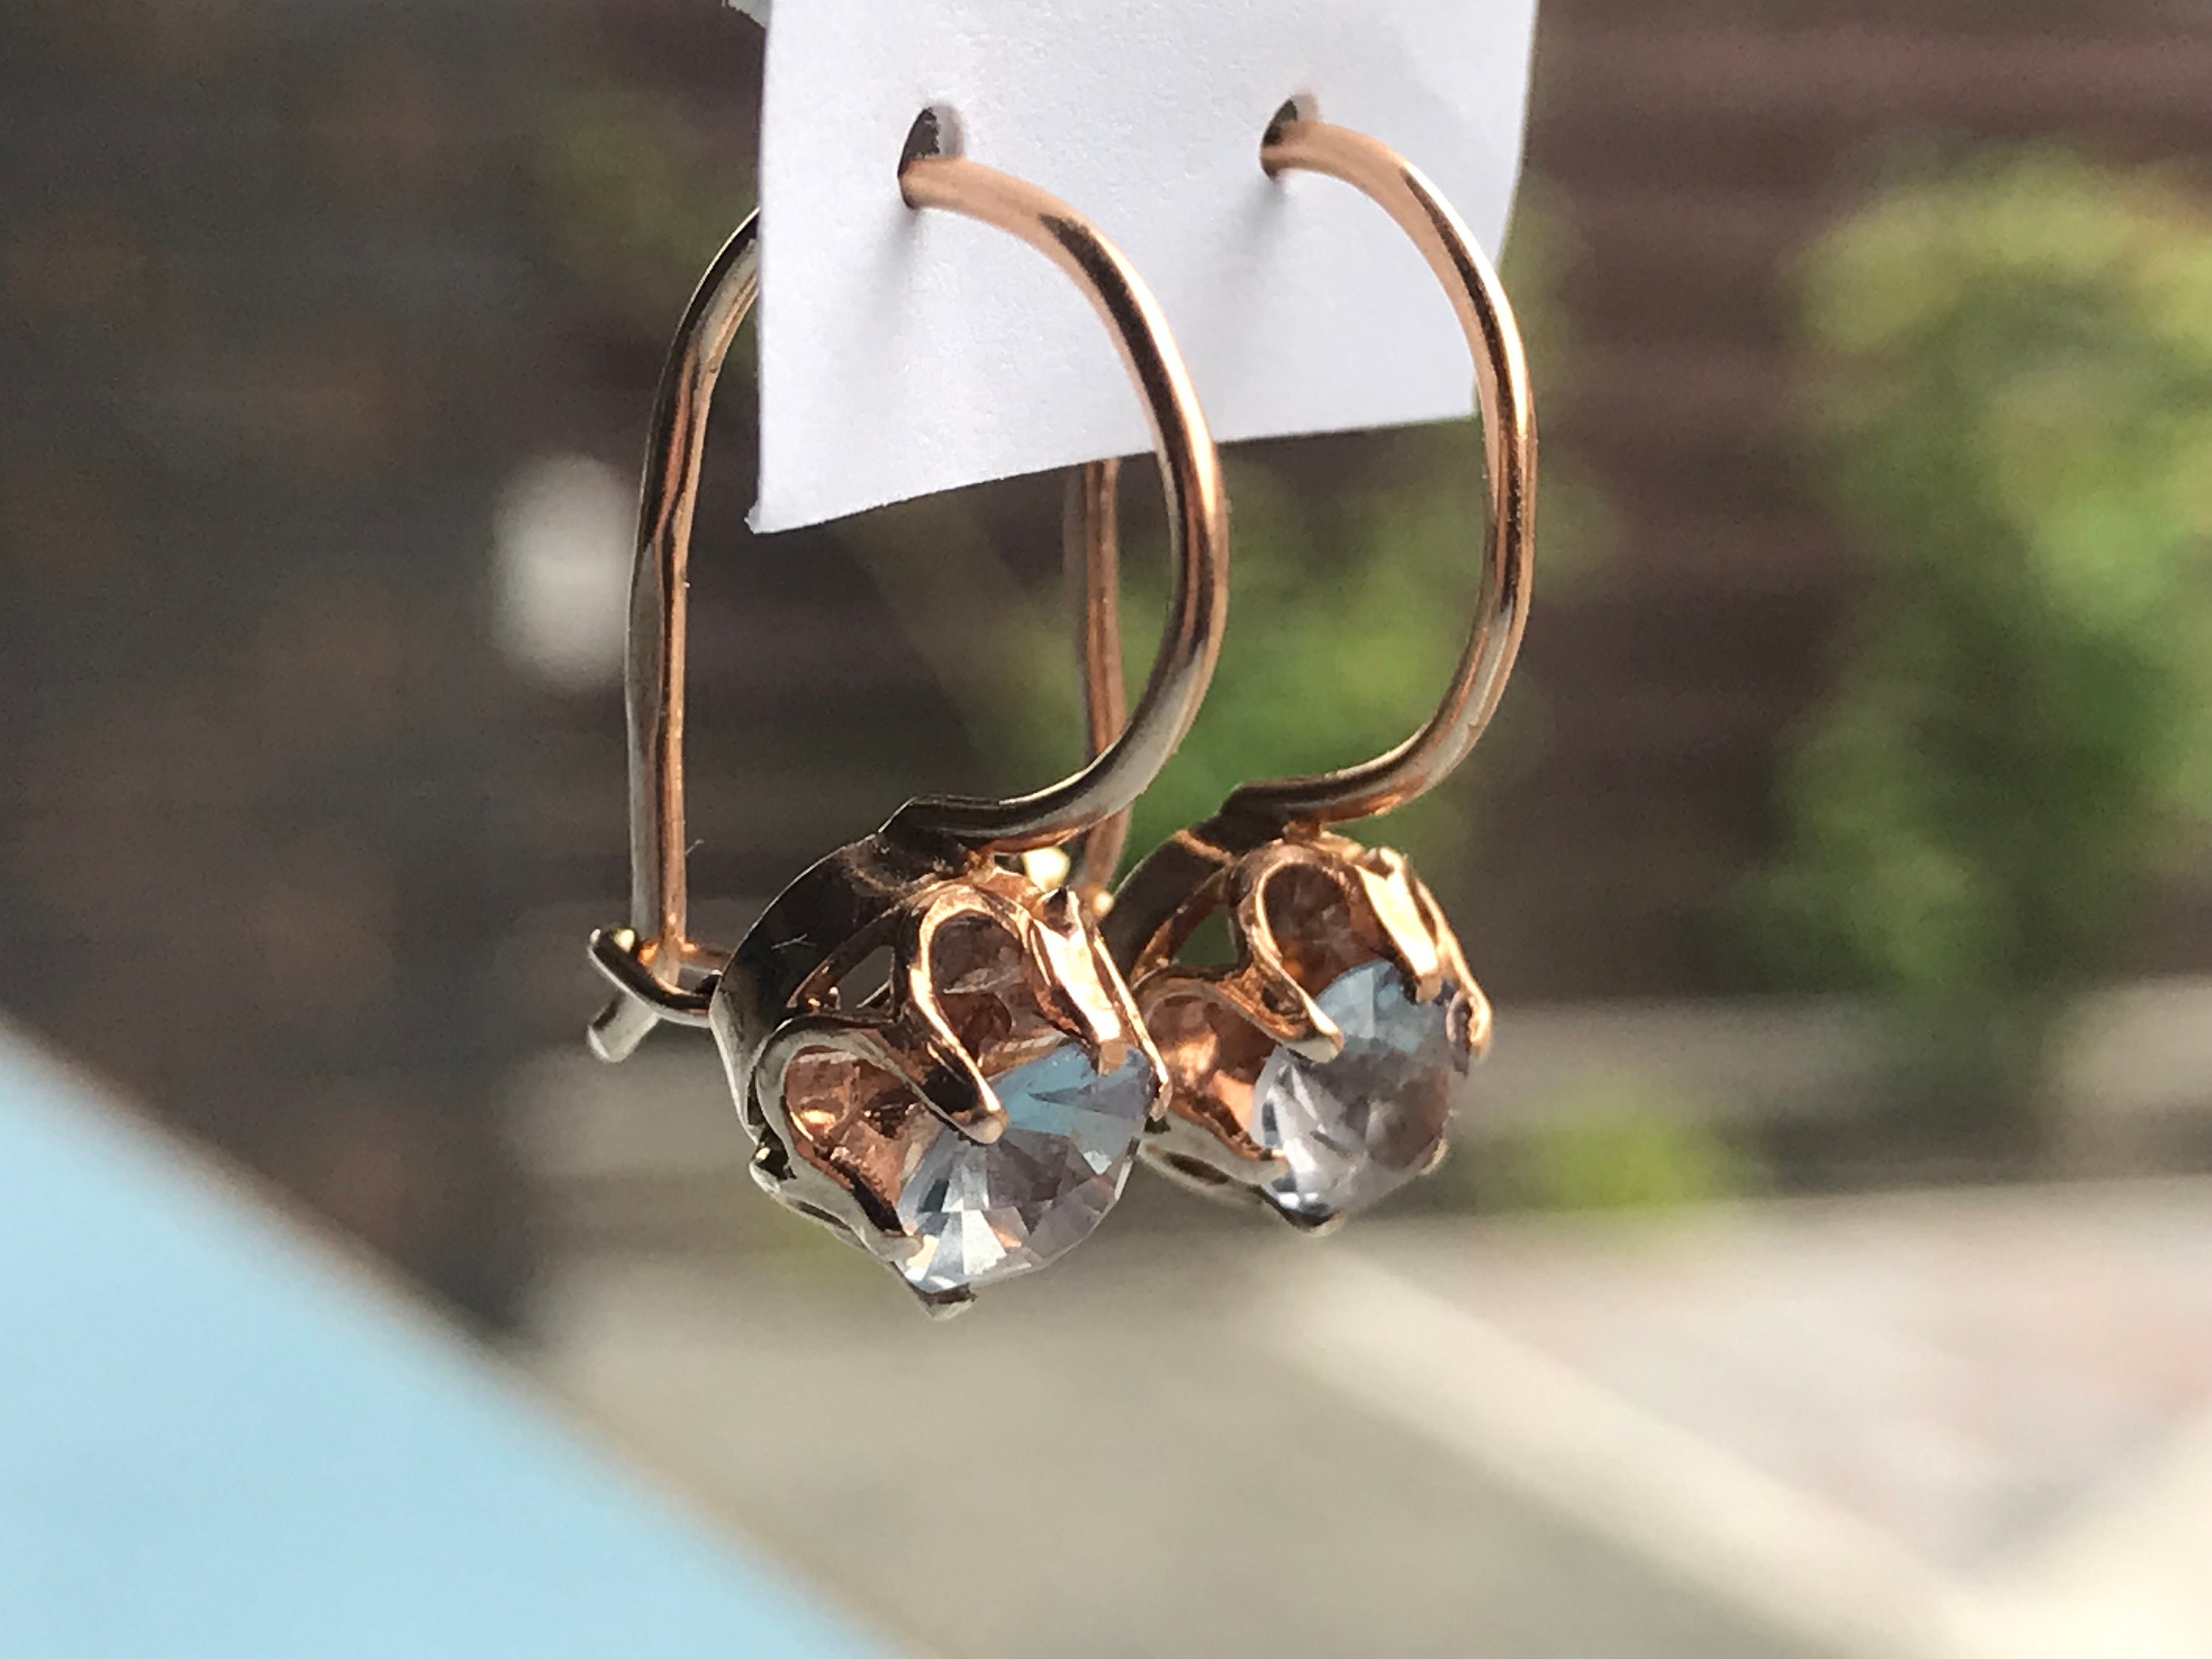 Amazon.com: Yurielys Clip on Hoop Earrings for Women Girls, 14K ...